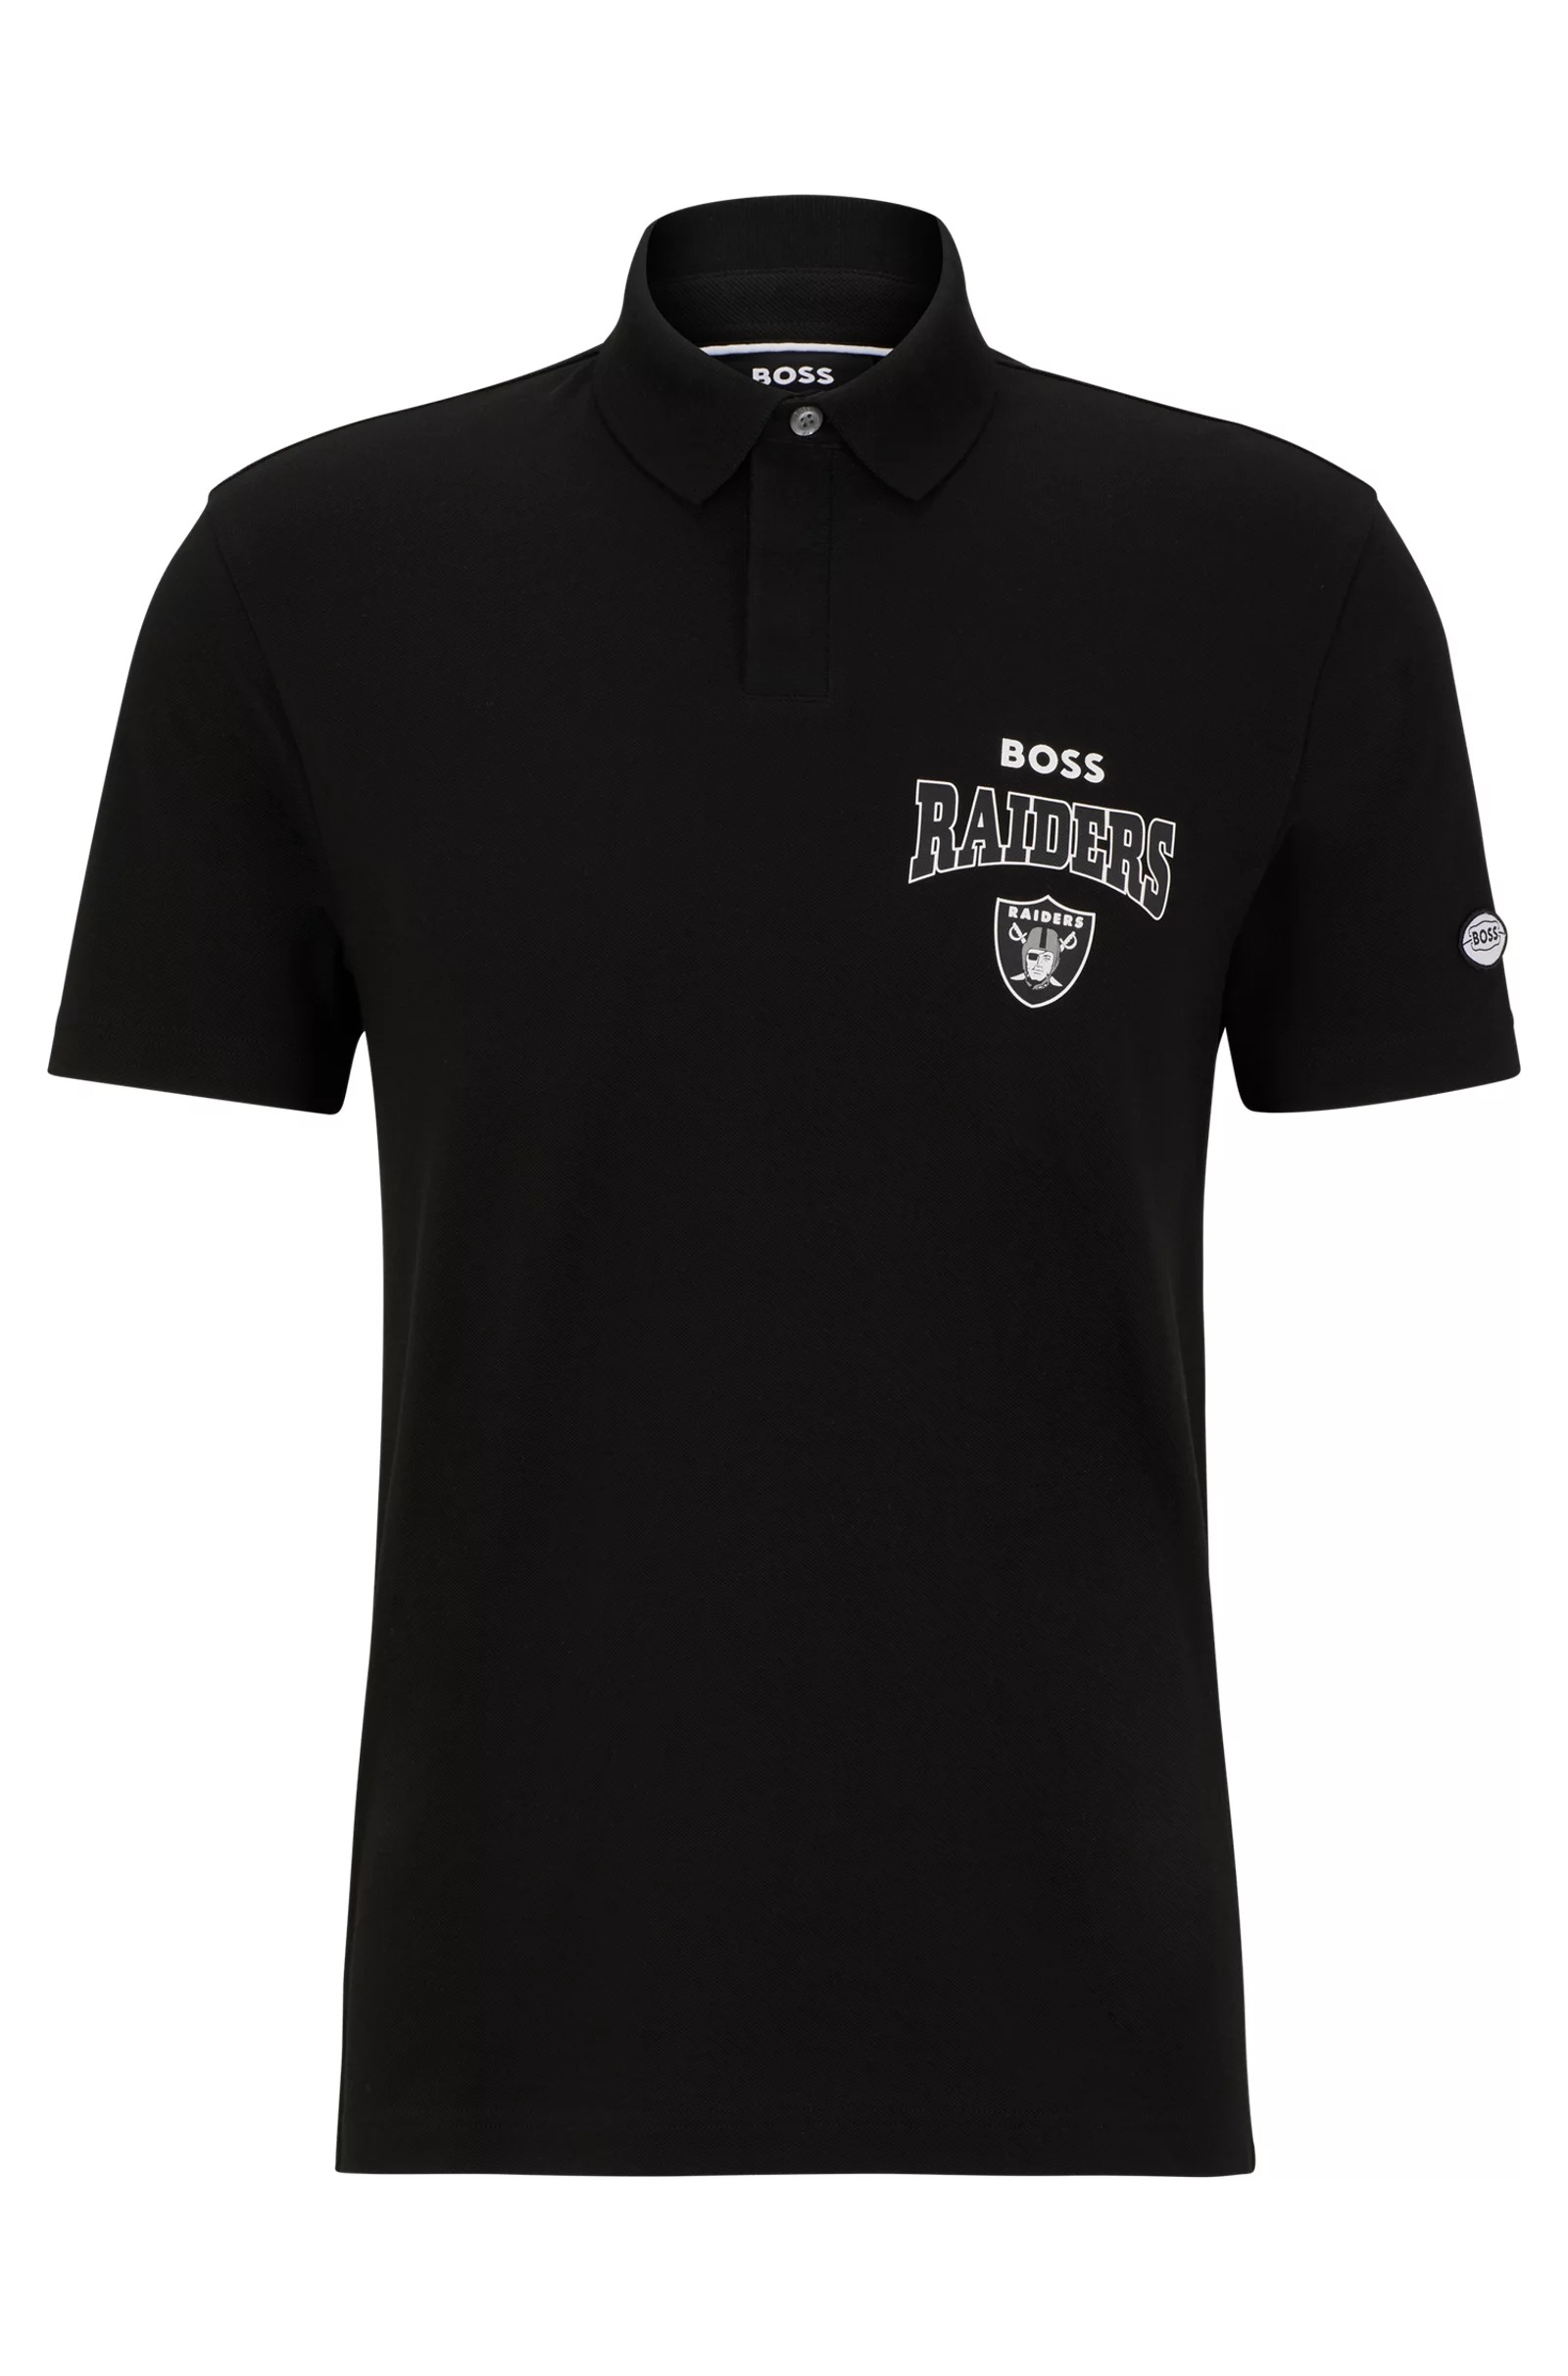 Футболка поло Boss X Nfl Cotton-piqué With Collaborative Branding Raiders, черный футболка поло boss x nfl cotton piqué with collaborative branding rams черный